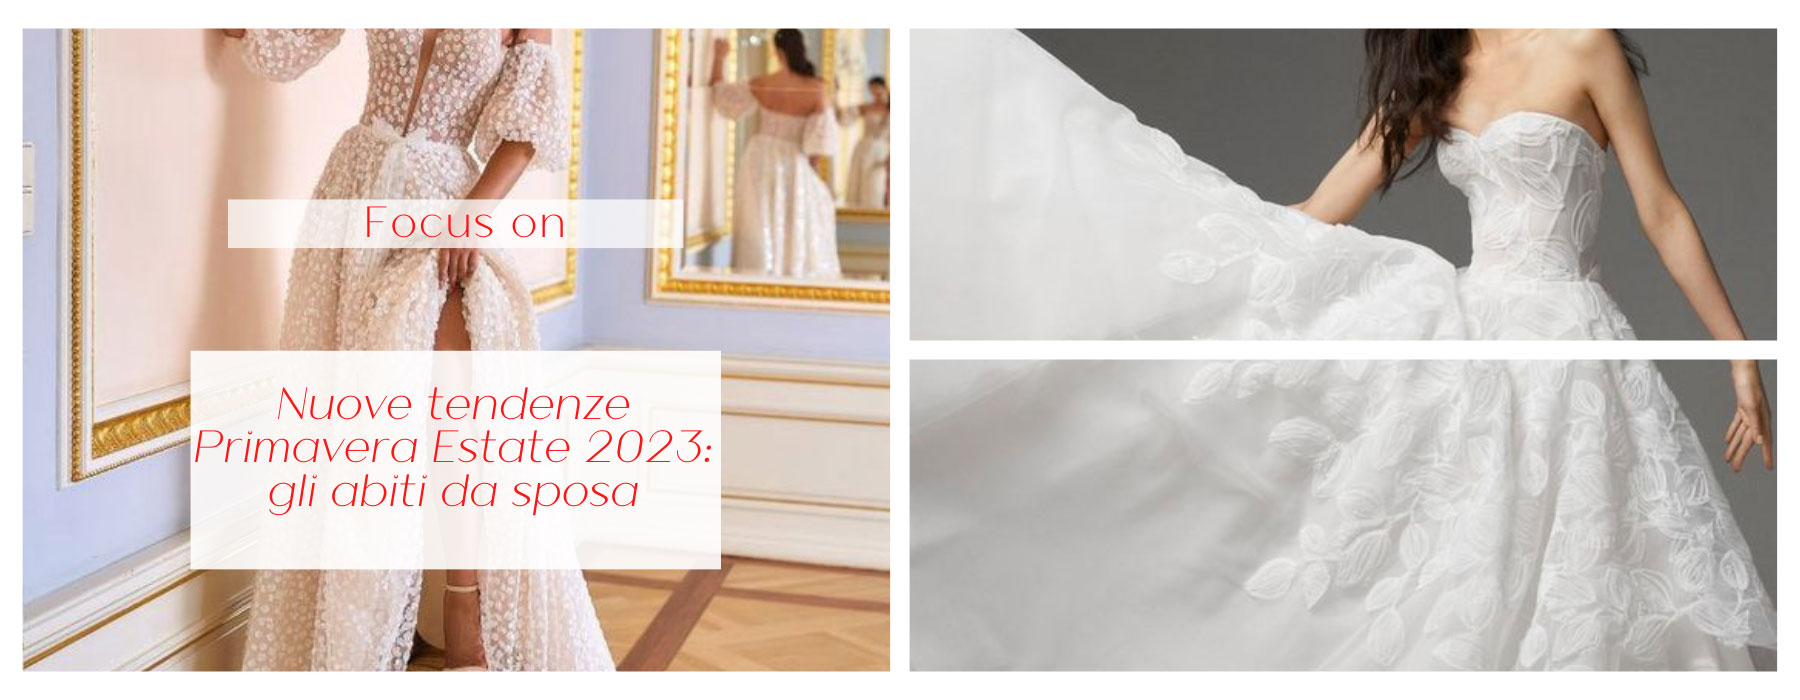 Nuove tendenze Primavera Estate 2023: gli abiti da sposa